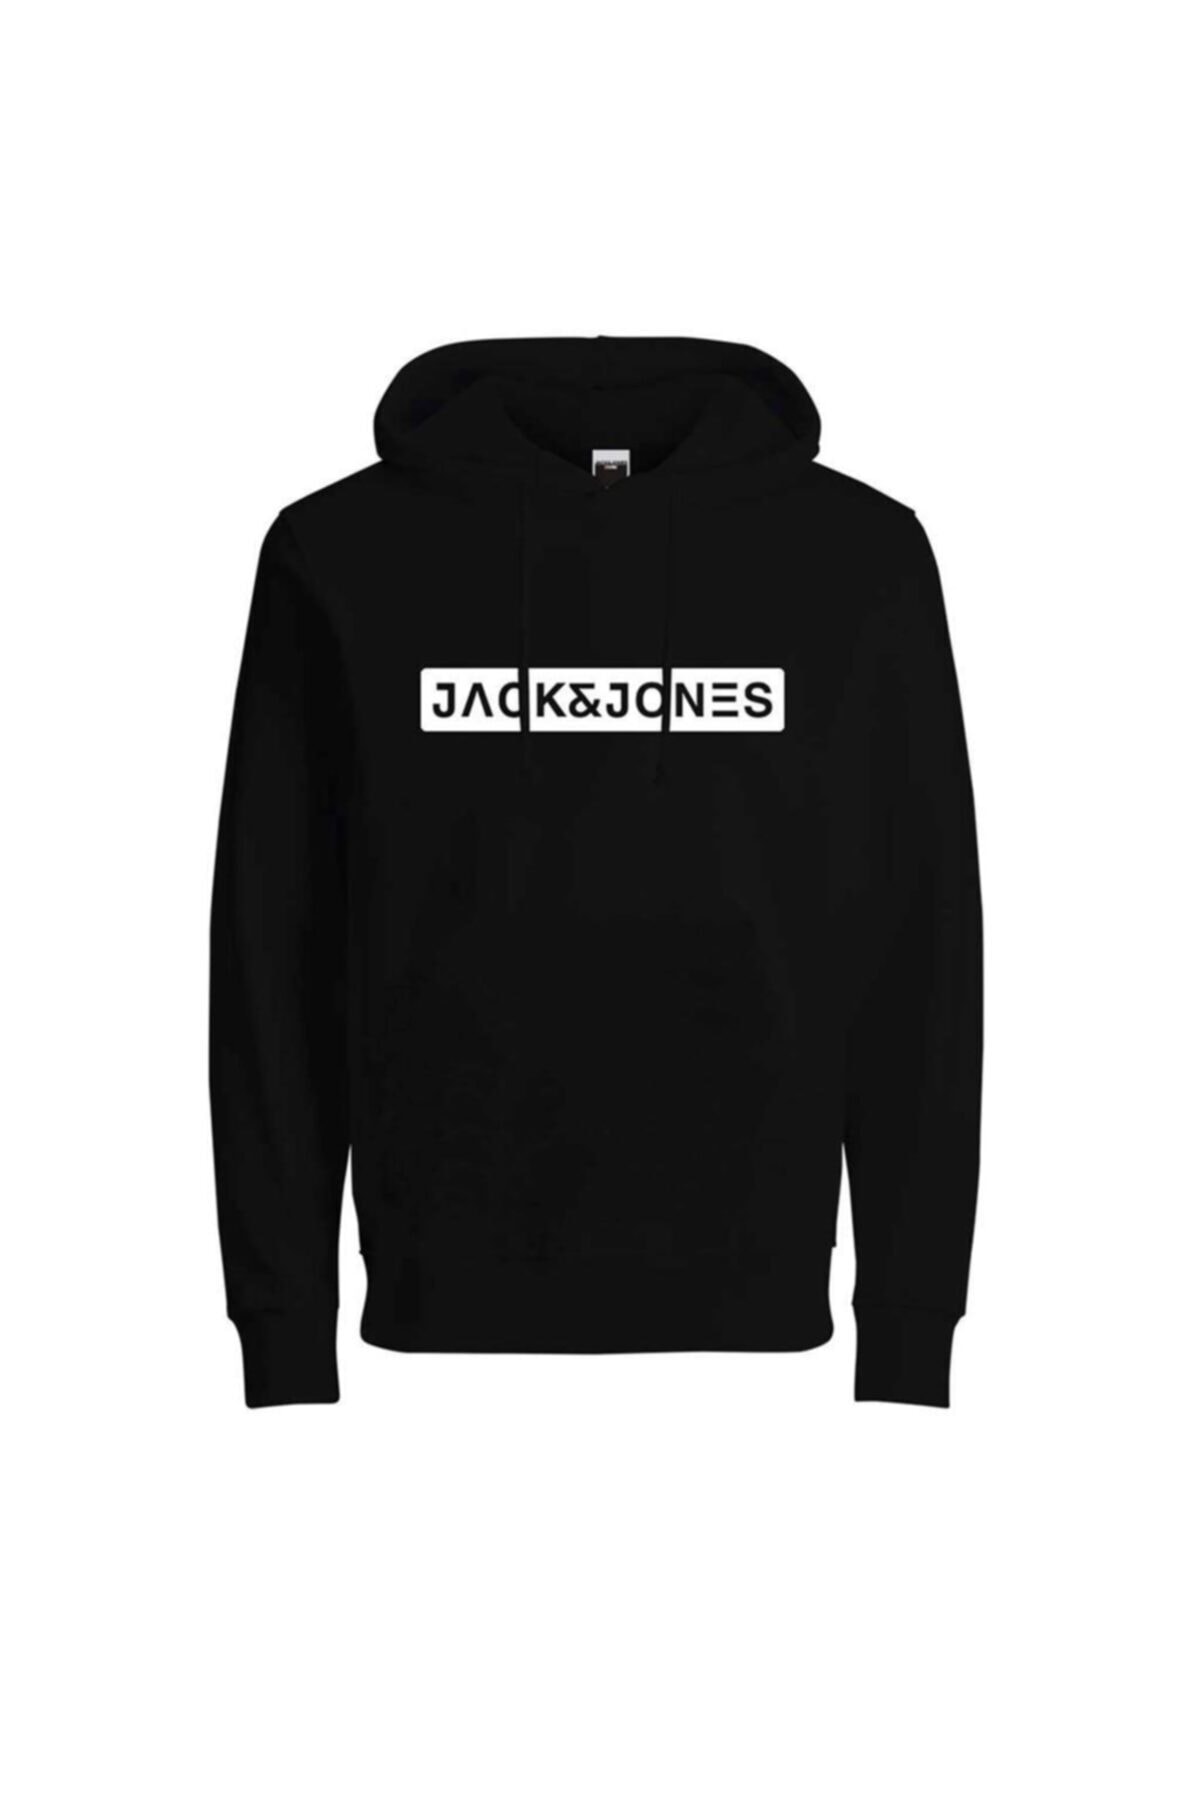 Jack & Jones Erkek Siyah Sweatshirt Fiyatı, Yorumları - TRENDYOL